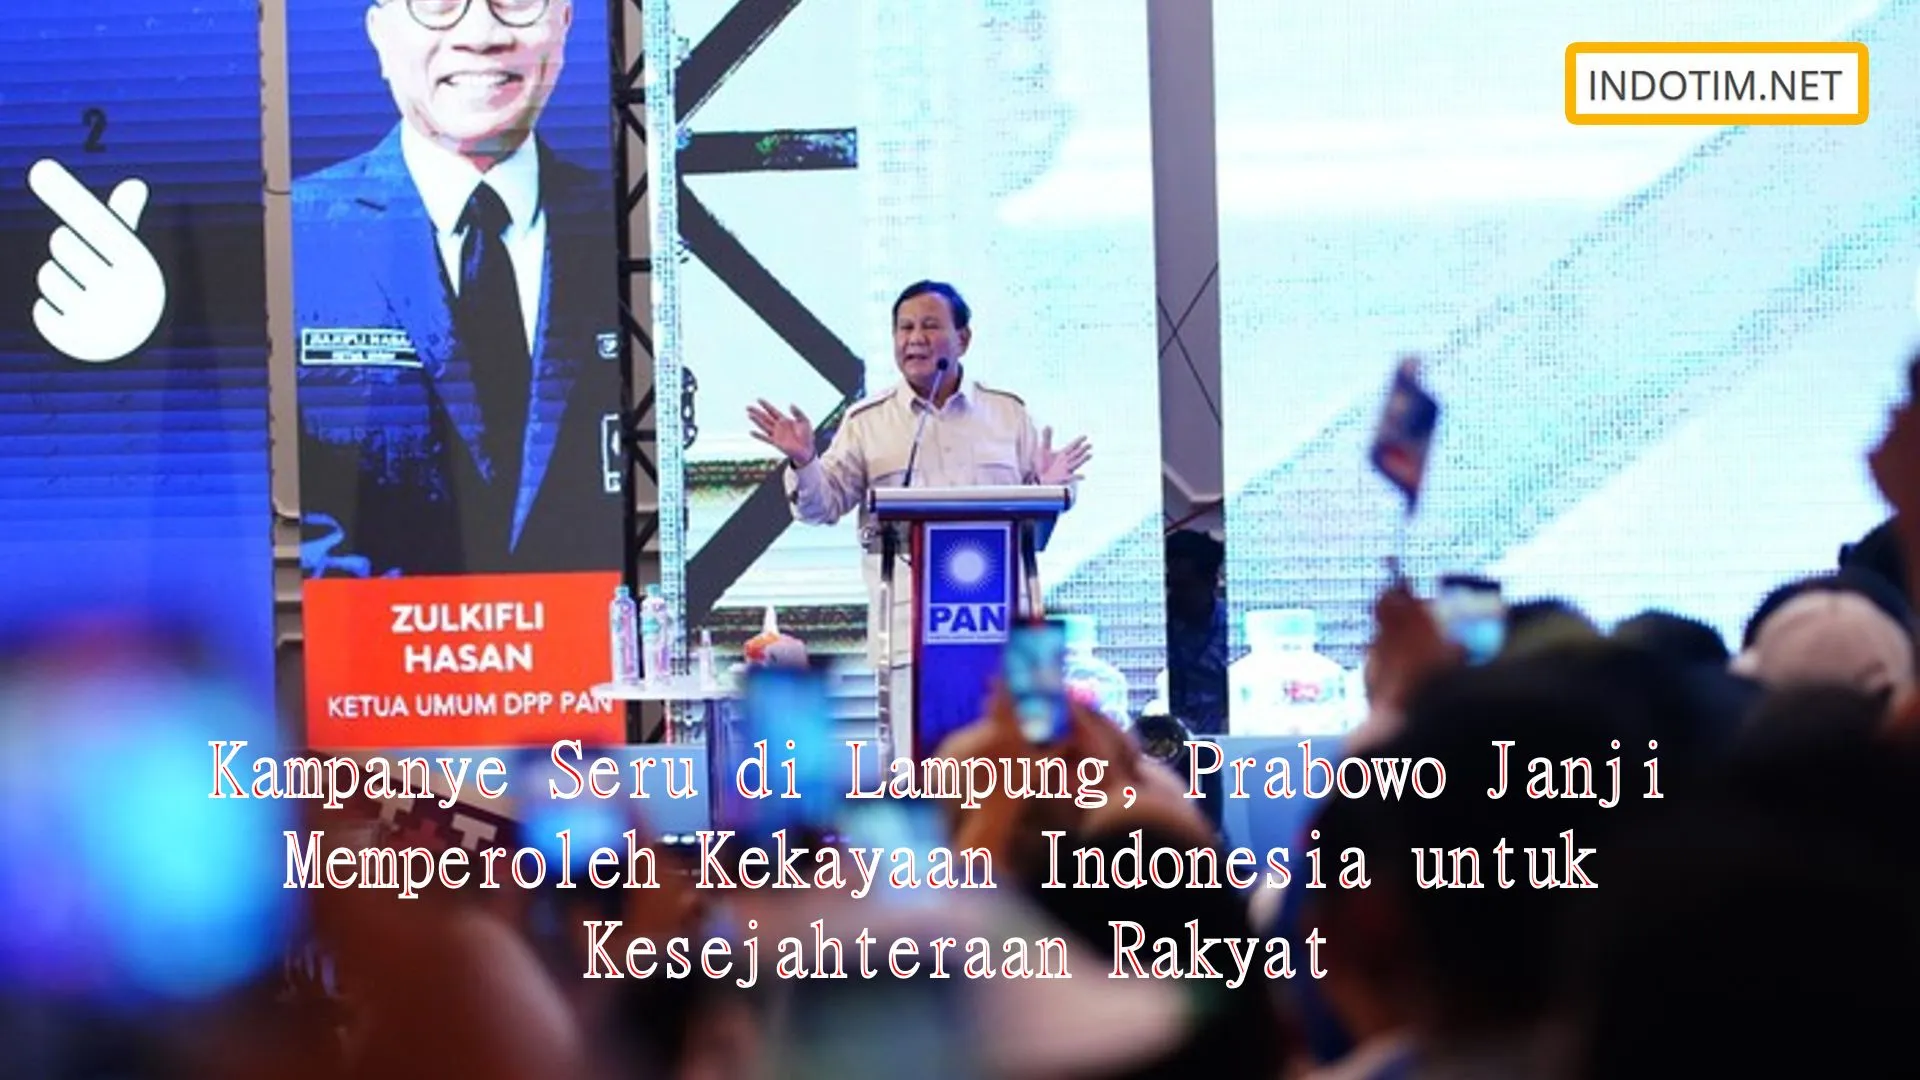 Kampanye Seru di Lampung, Prabowo Janji Memperoleh Kekayaan Indonesia untuk Kesejahteraan Rakyat